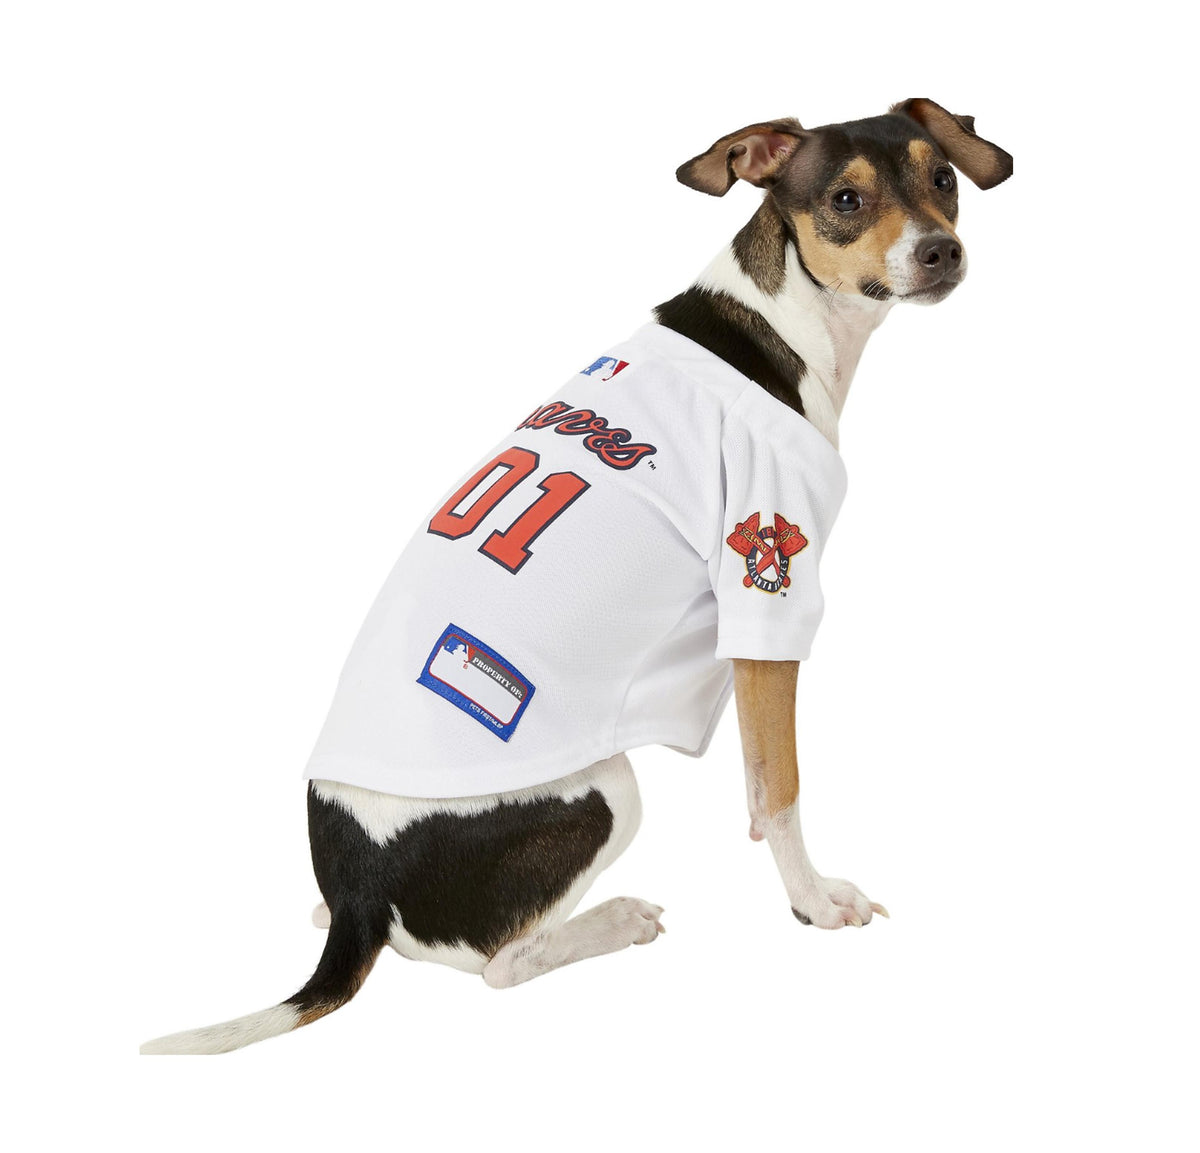 astros puppy jersey